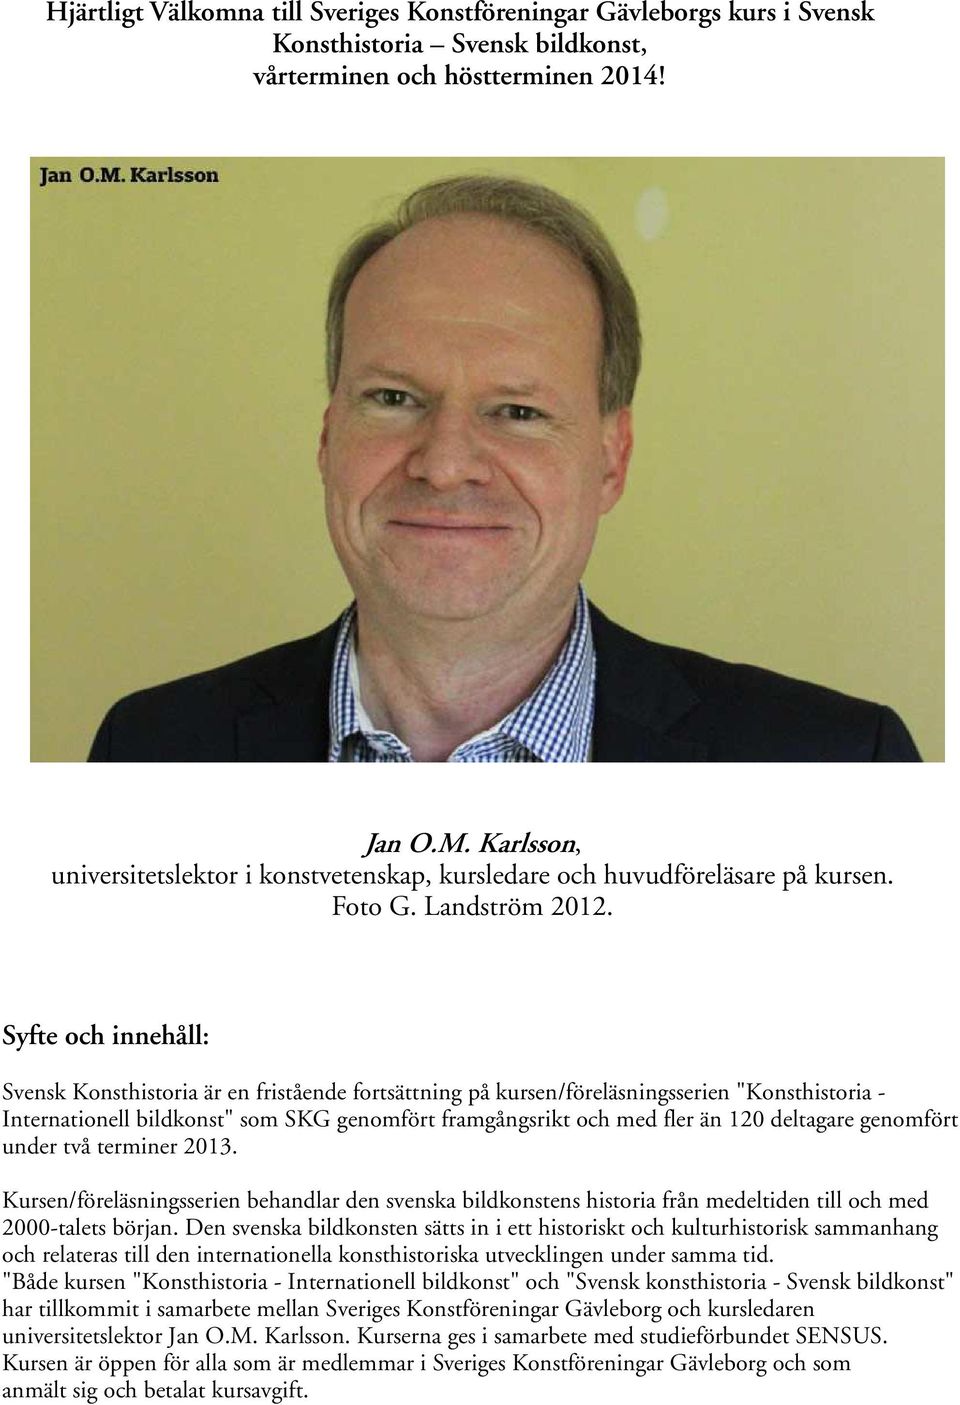 Syfte och innehåll: Svensk Konsthistoria är en fristående fortsättning på kursen/föreläsningsserien "Konsthistoria - Internationell bildkonst" som SKG genomfört framgångsrikt och med fler än 120